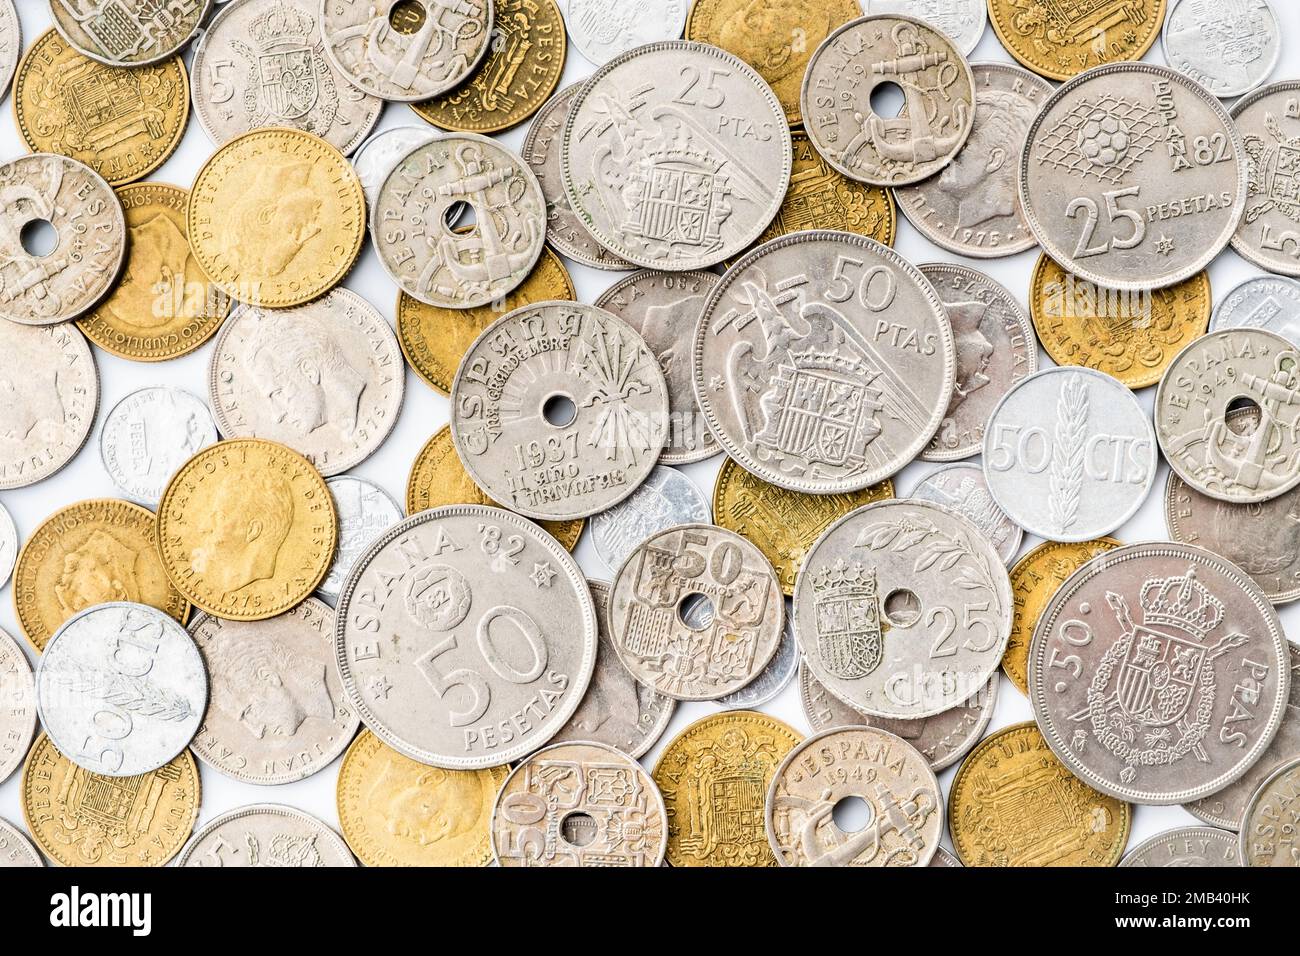 Alte spanische Münzen des 20. Jahrhunderts. Das aktuelle Geld Spaniens Stockfoto